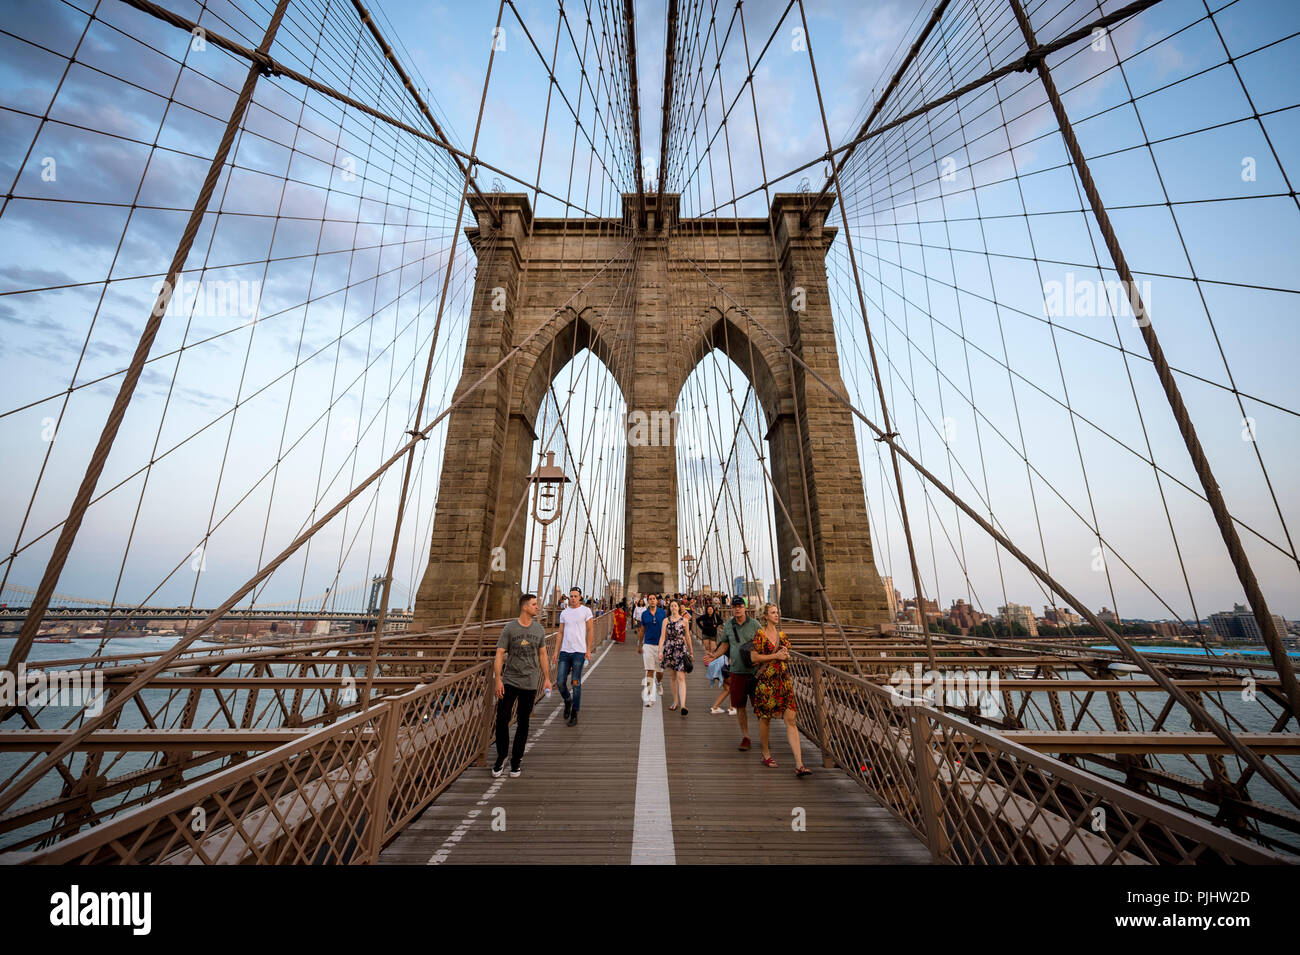 NEW YORK - Agosto 26, 2017: i turisti e la gente del posto la lotta per lo spazio sulla affollata strada pedonale che conduce attraverso il Ponte di Brooklyn al tramonto. Foto Stock